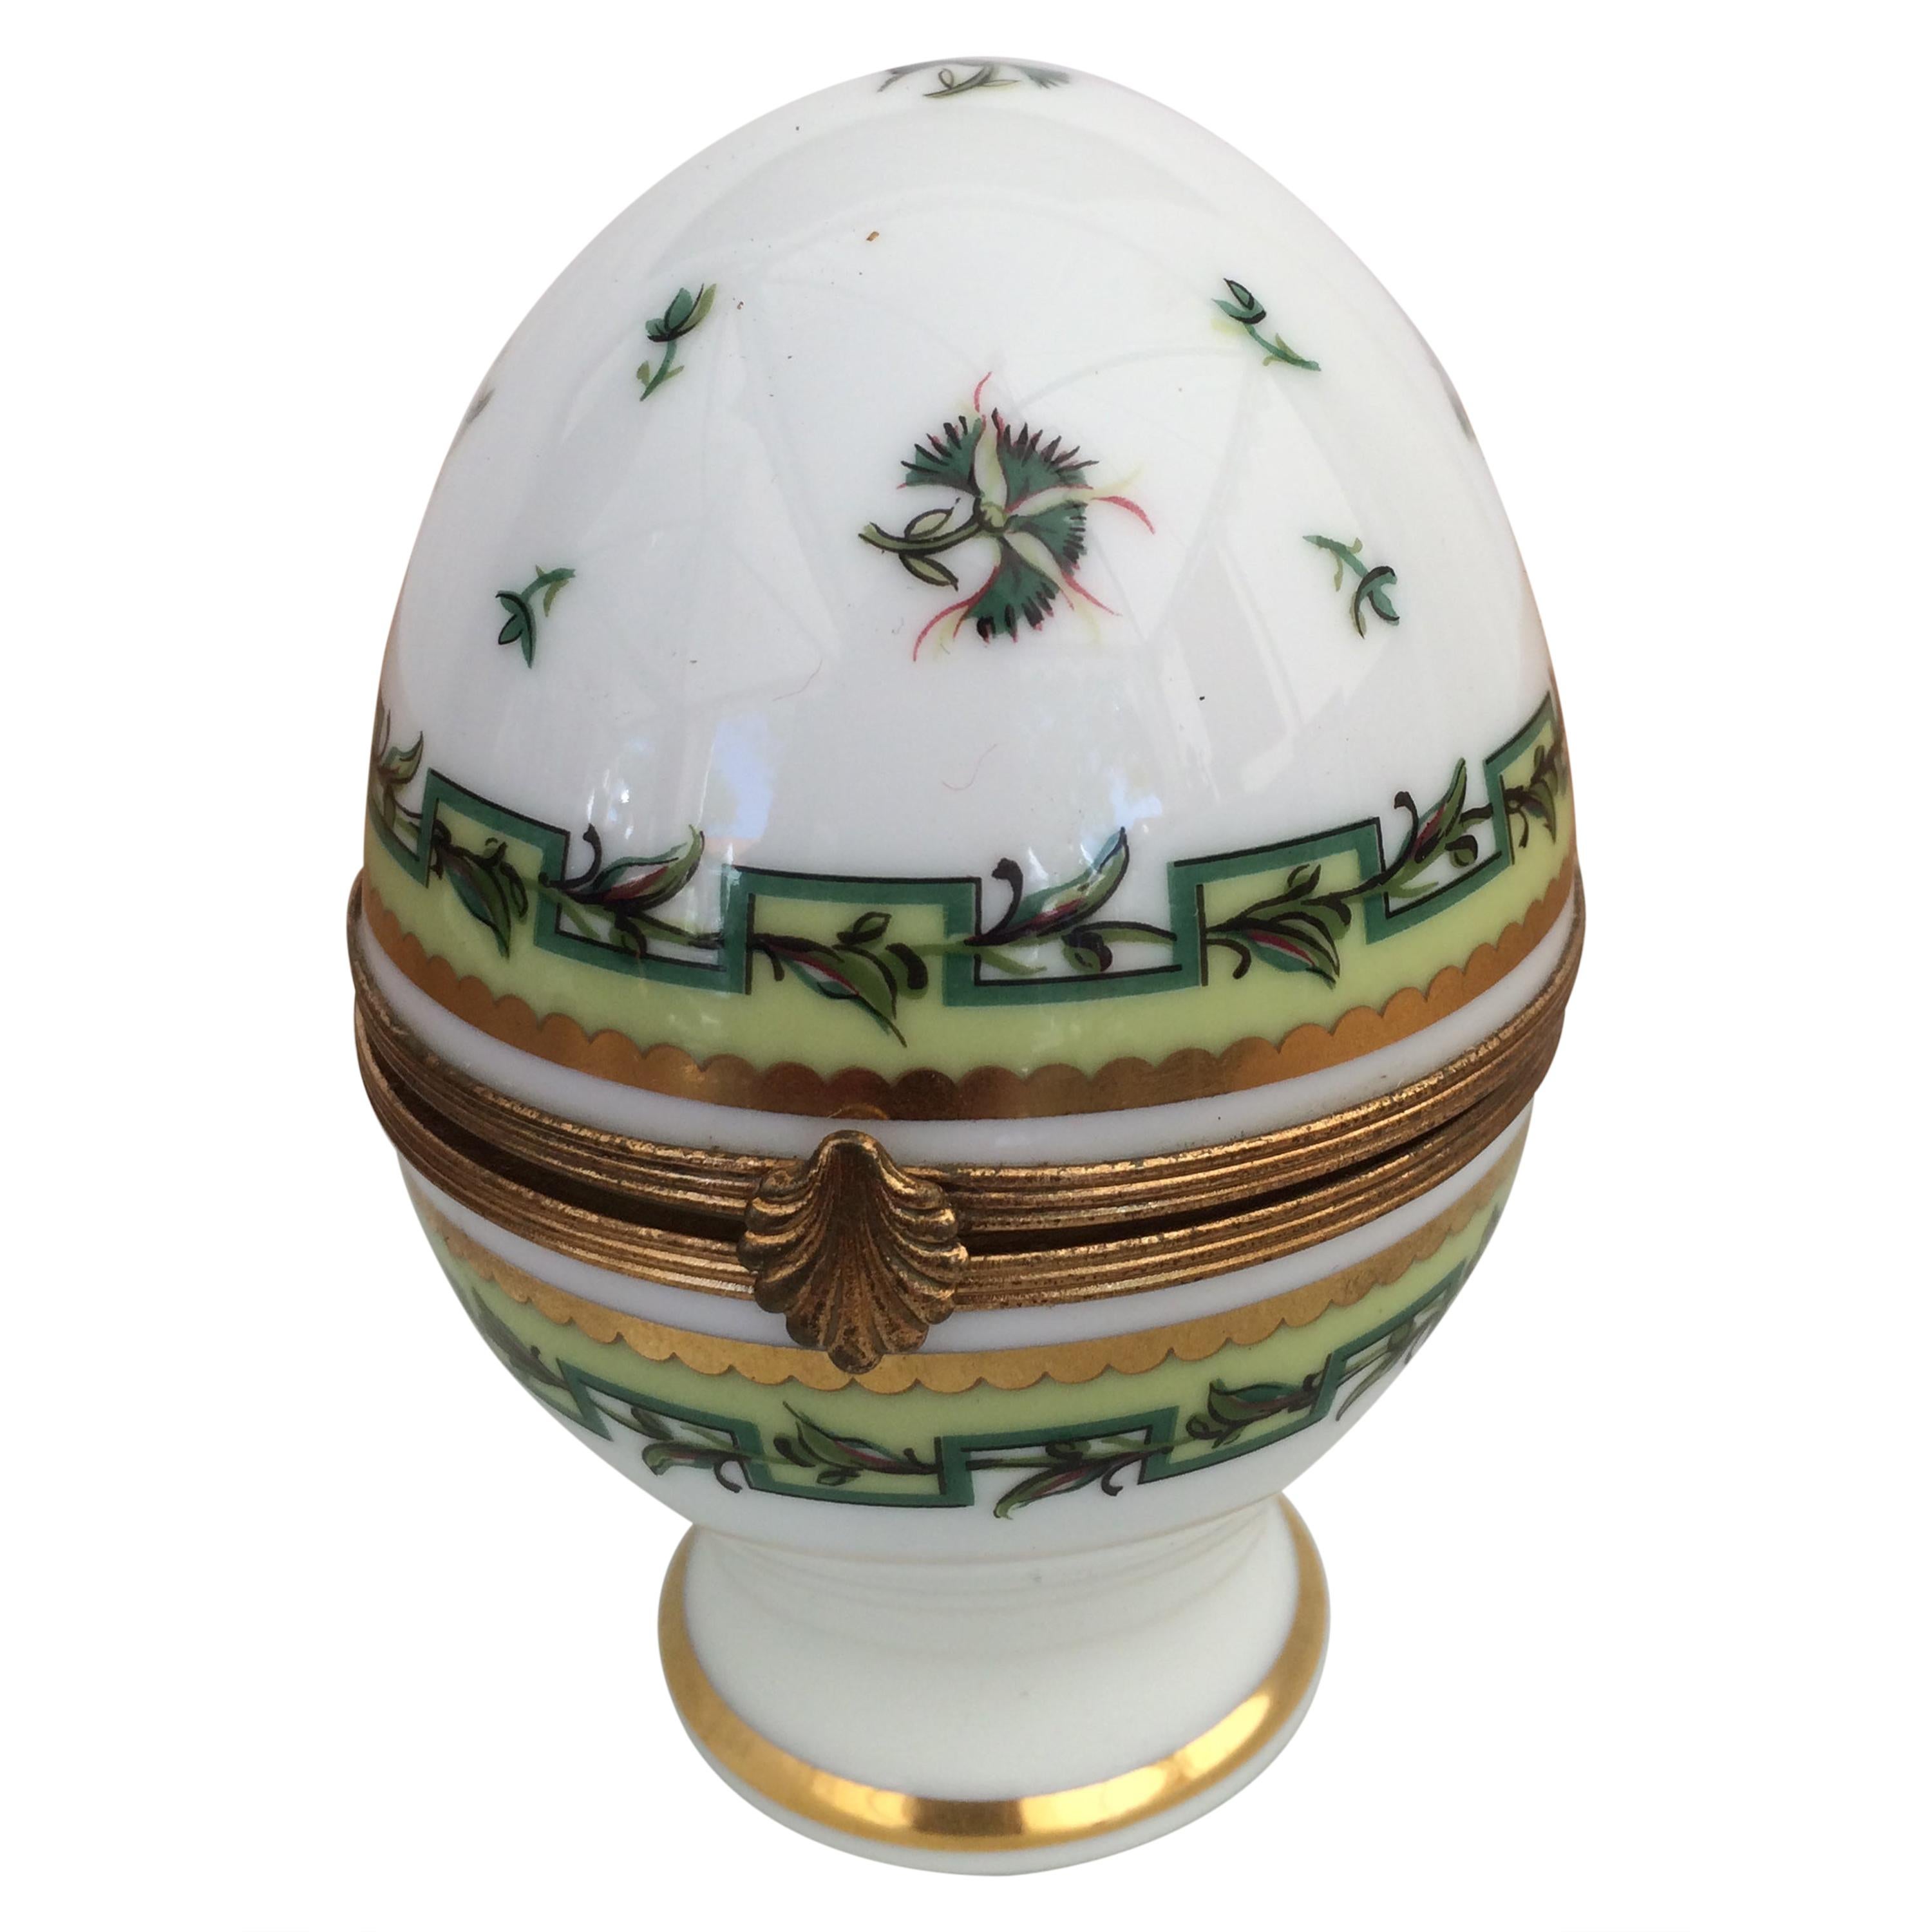 Charming Vintage Limoges Porcelain Egg Shaped Trinket Box